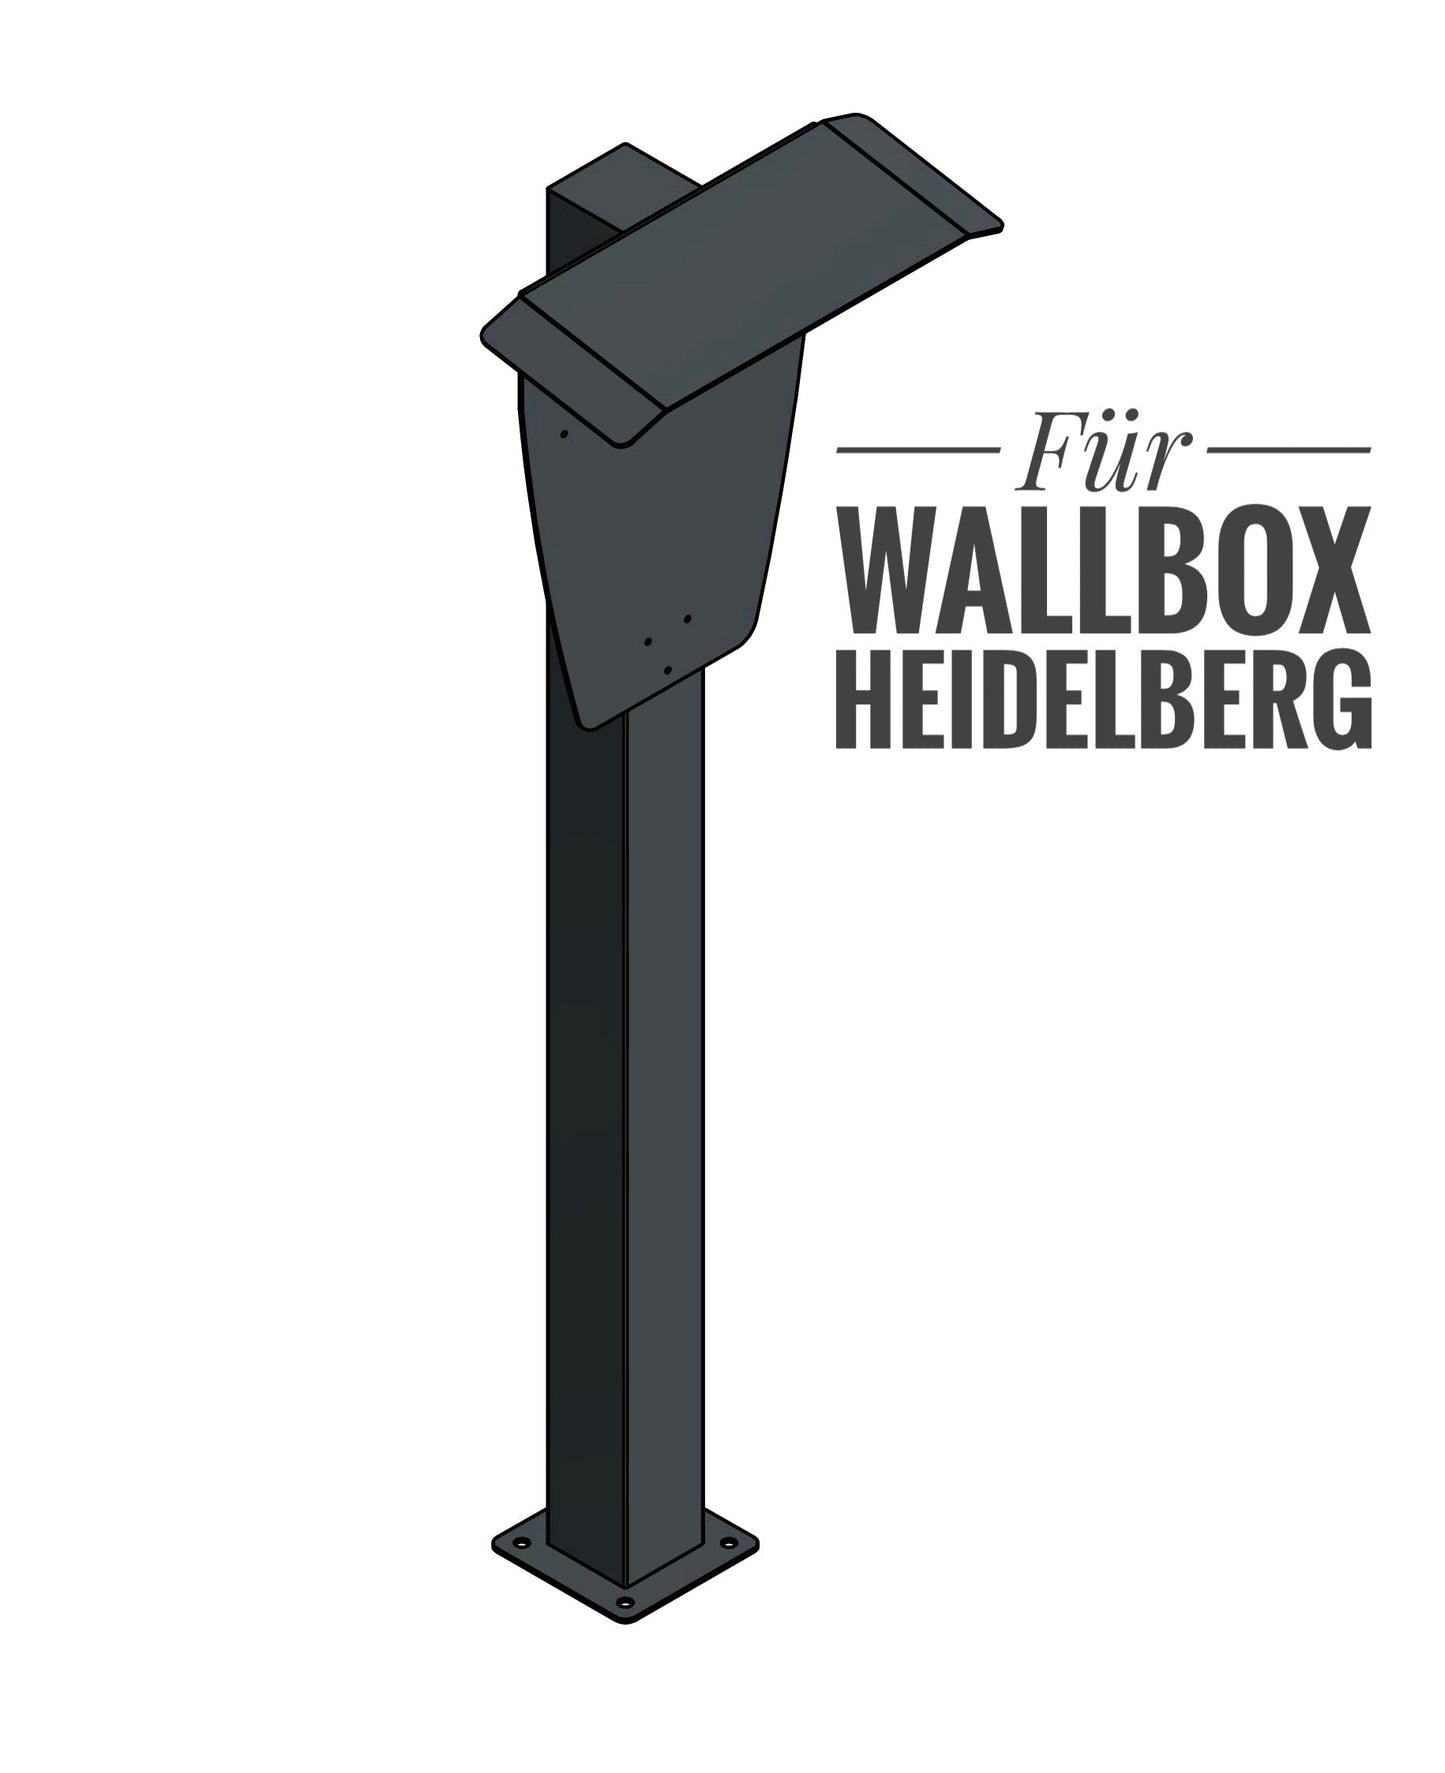 Stazione di ricarica per Heidelberg Wallbox con tetto | stare in piedi | Stai in piedi | stele